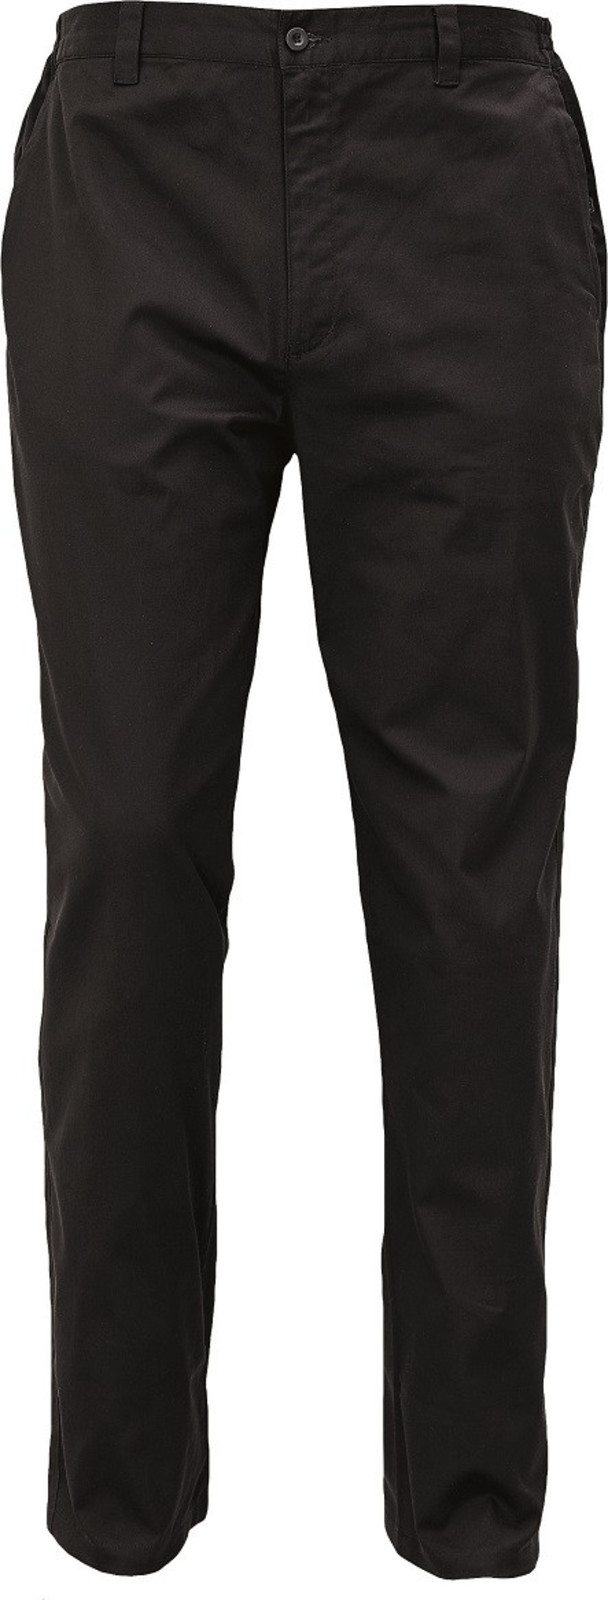 Voľnočasové nohavice Lagan pánske - veľkosť: 52, farba: čierna